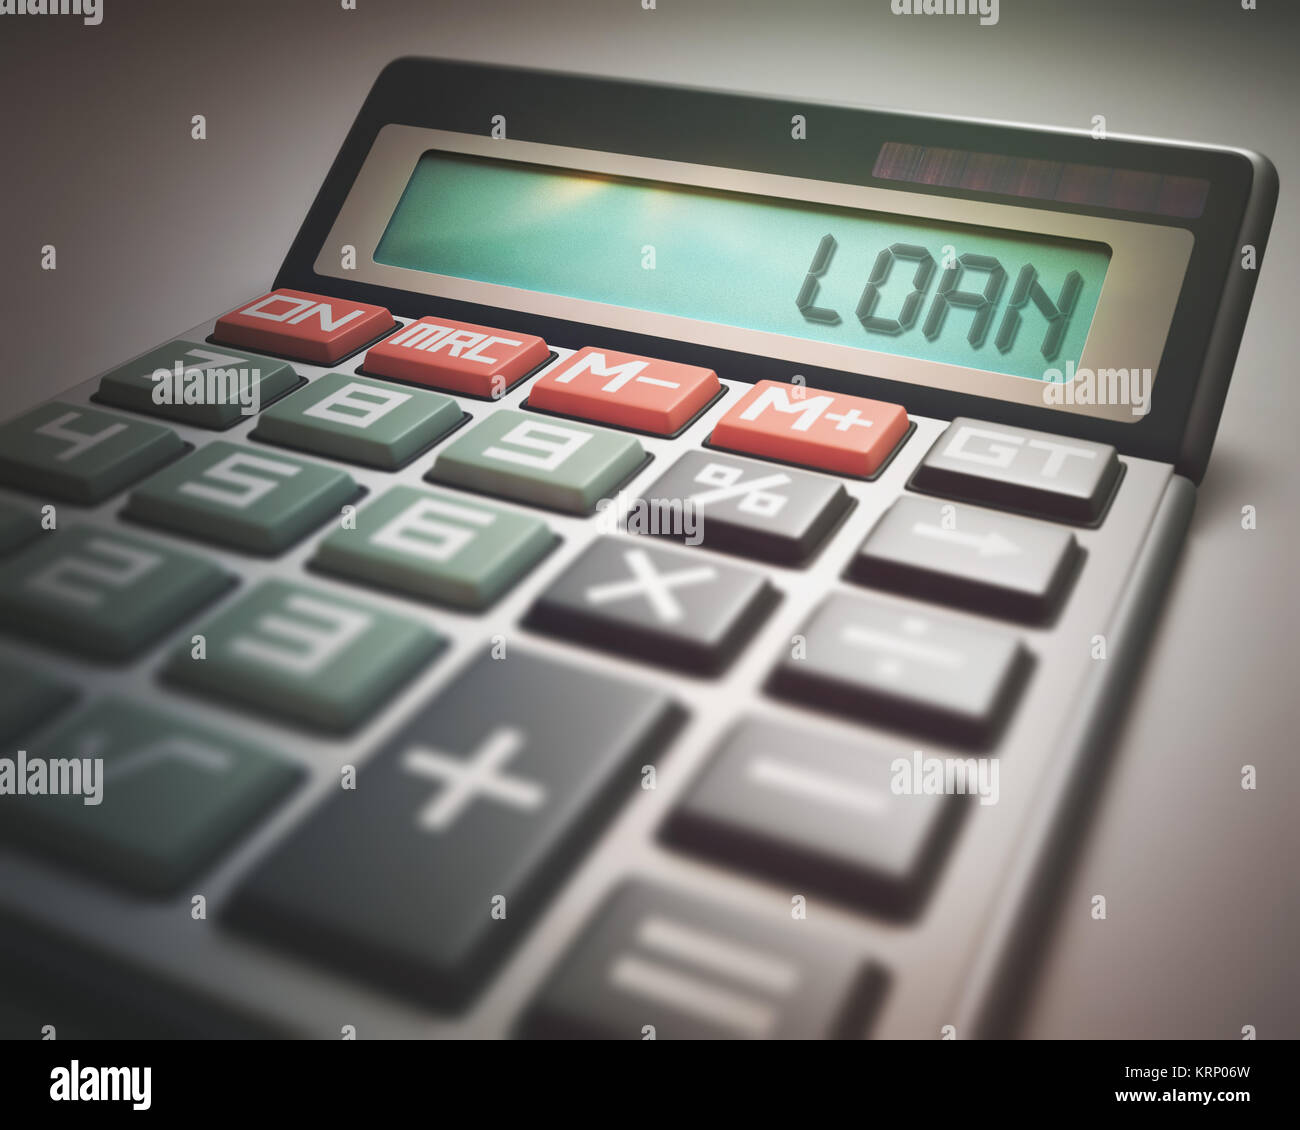 Loan Calculator Stock Photo